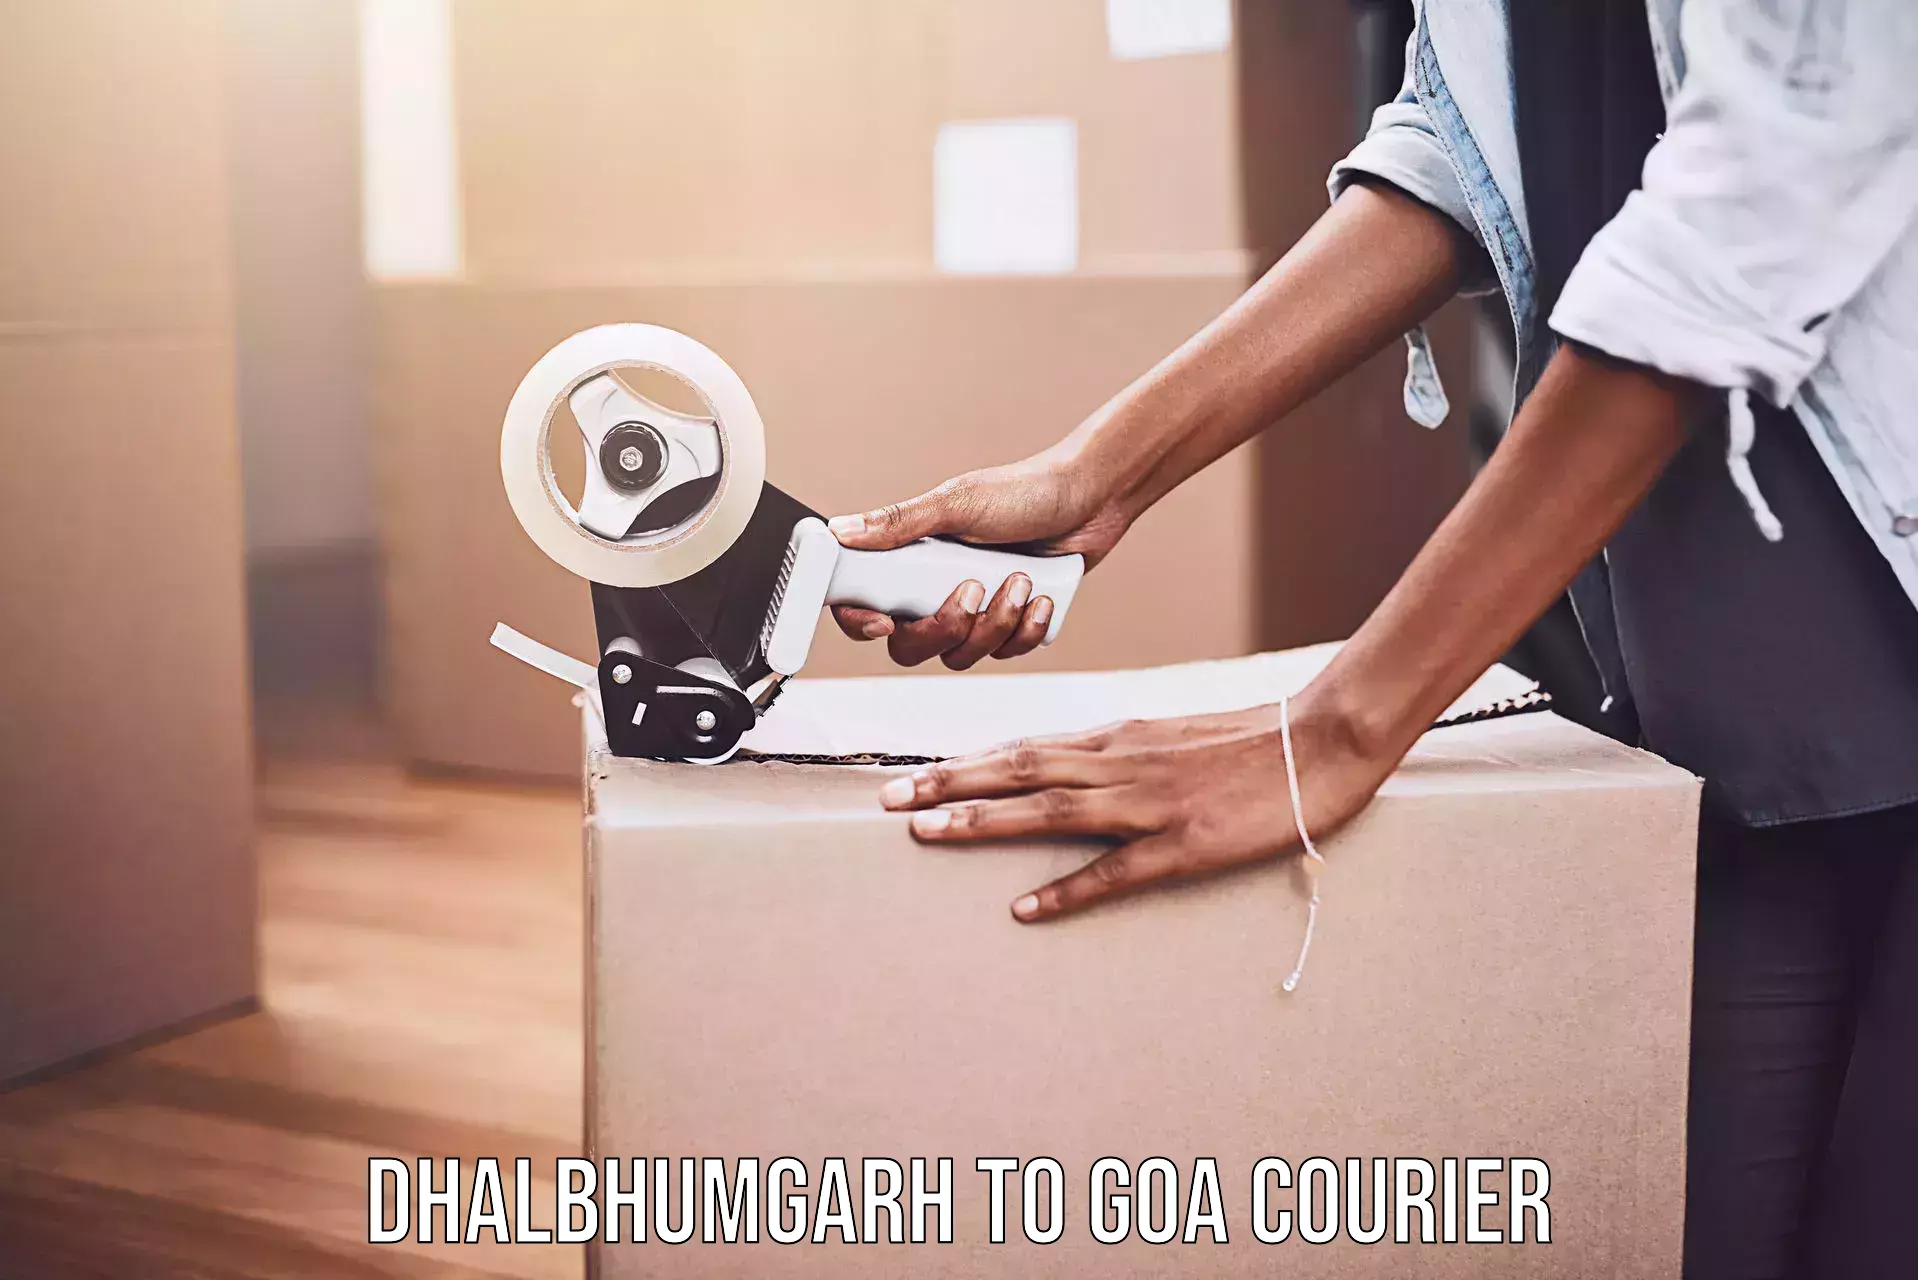 Door-to-door freight service Dhalbhumgarh to Panjim